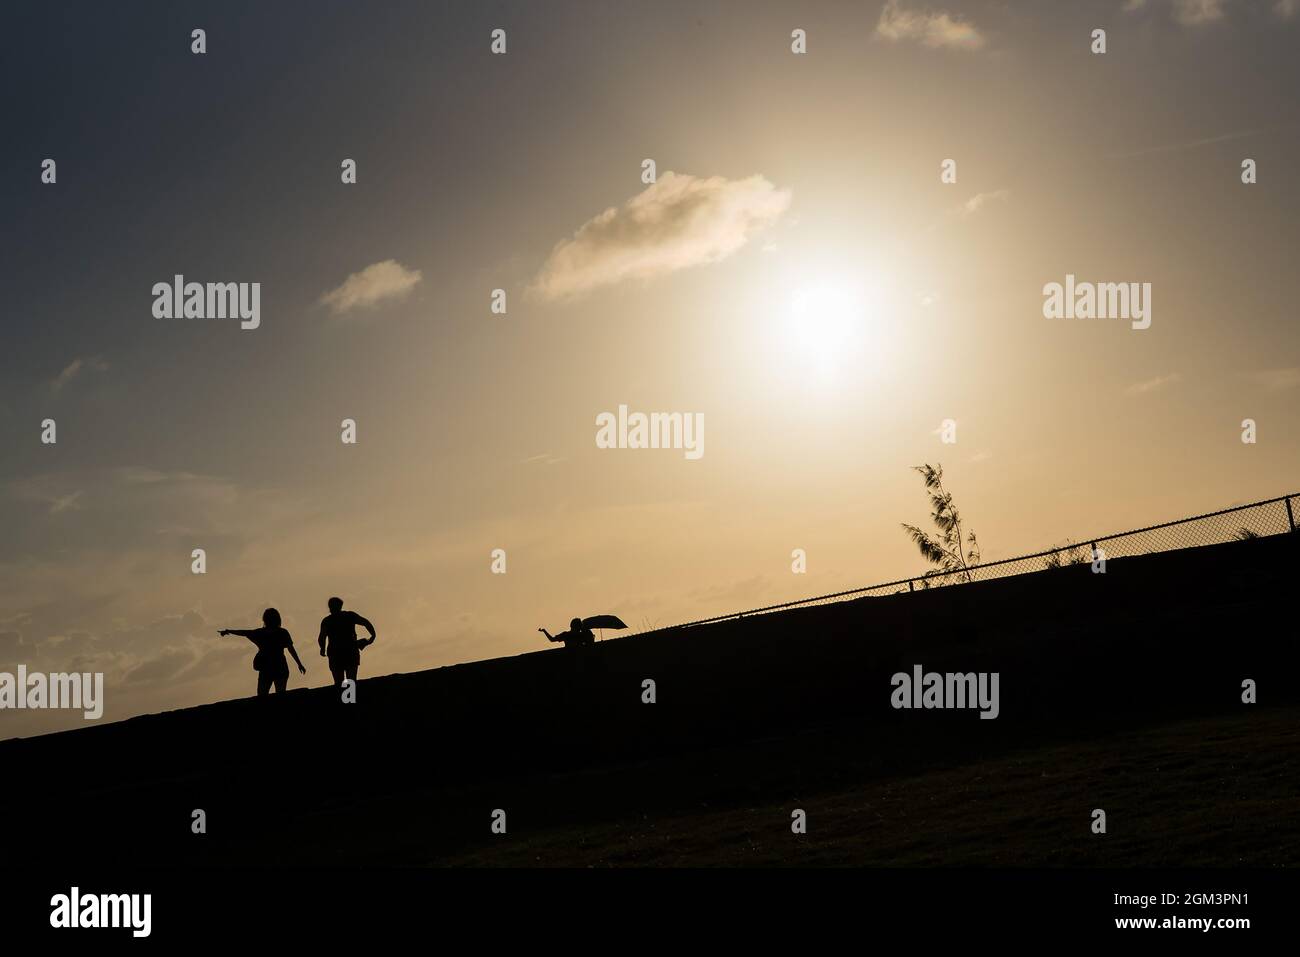 Immagine di stile di vita di due persone che si trovano in piedi insieme con una che punta il dito verso l'alto durante il tramonto a San Juan, Porto Rico. Toni caldi Foto Stock